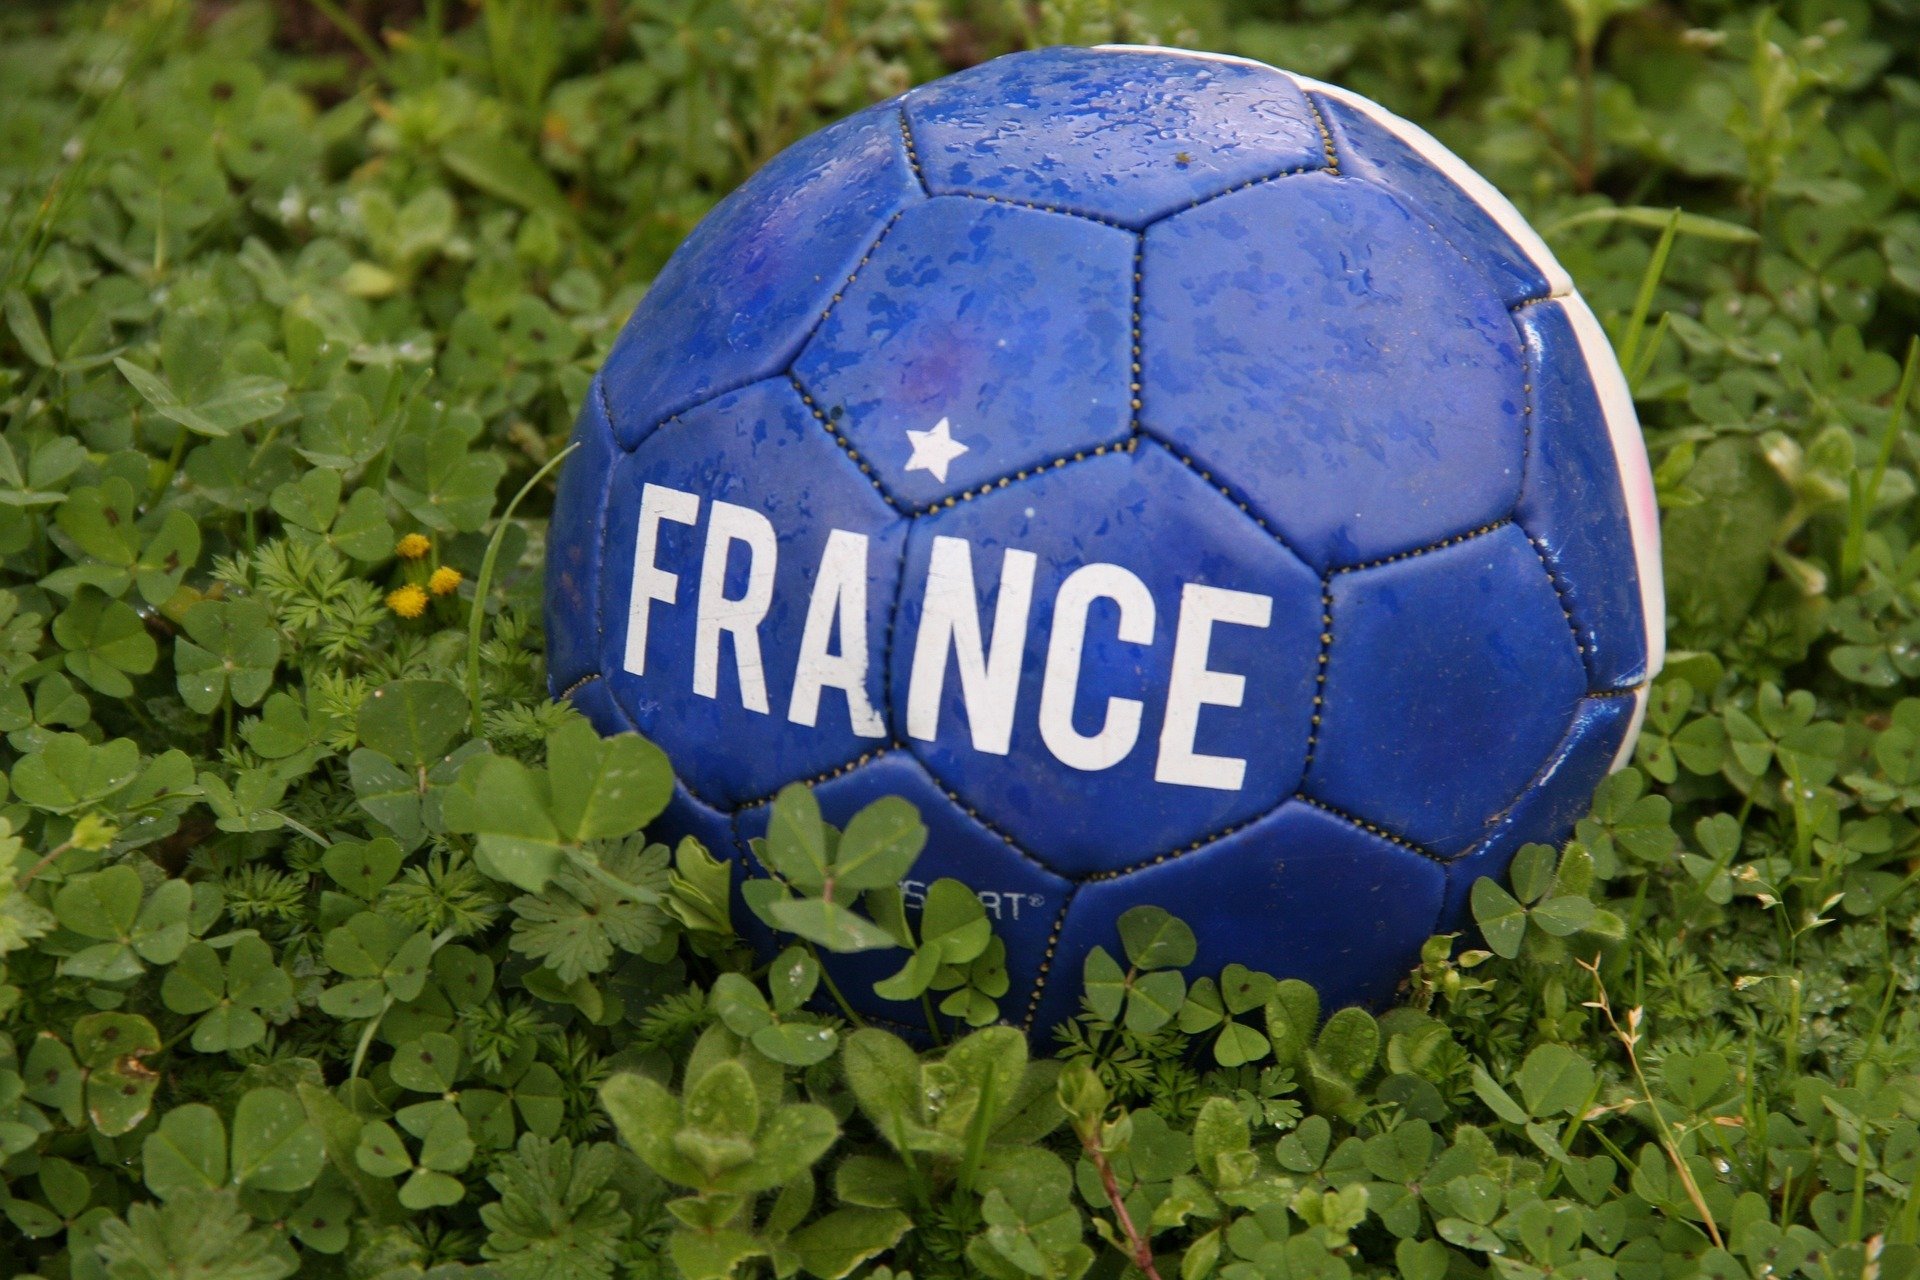 A Seleção da França é uma das grandes favoritas ao título da Copa do Mundo de 2022. Confira quais são os melhores jogadores da França.